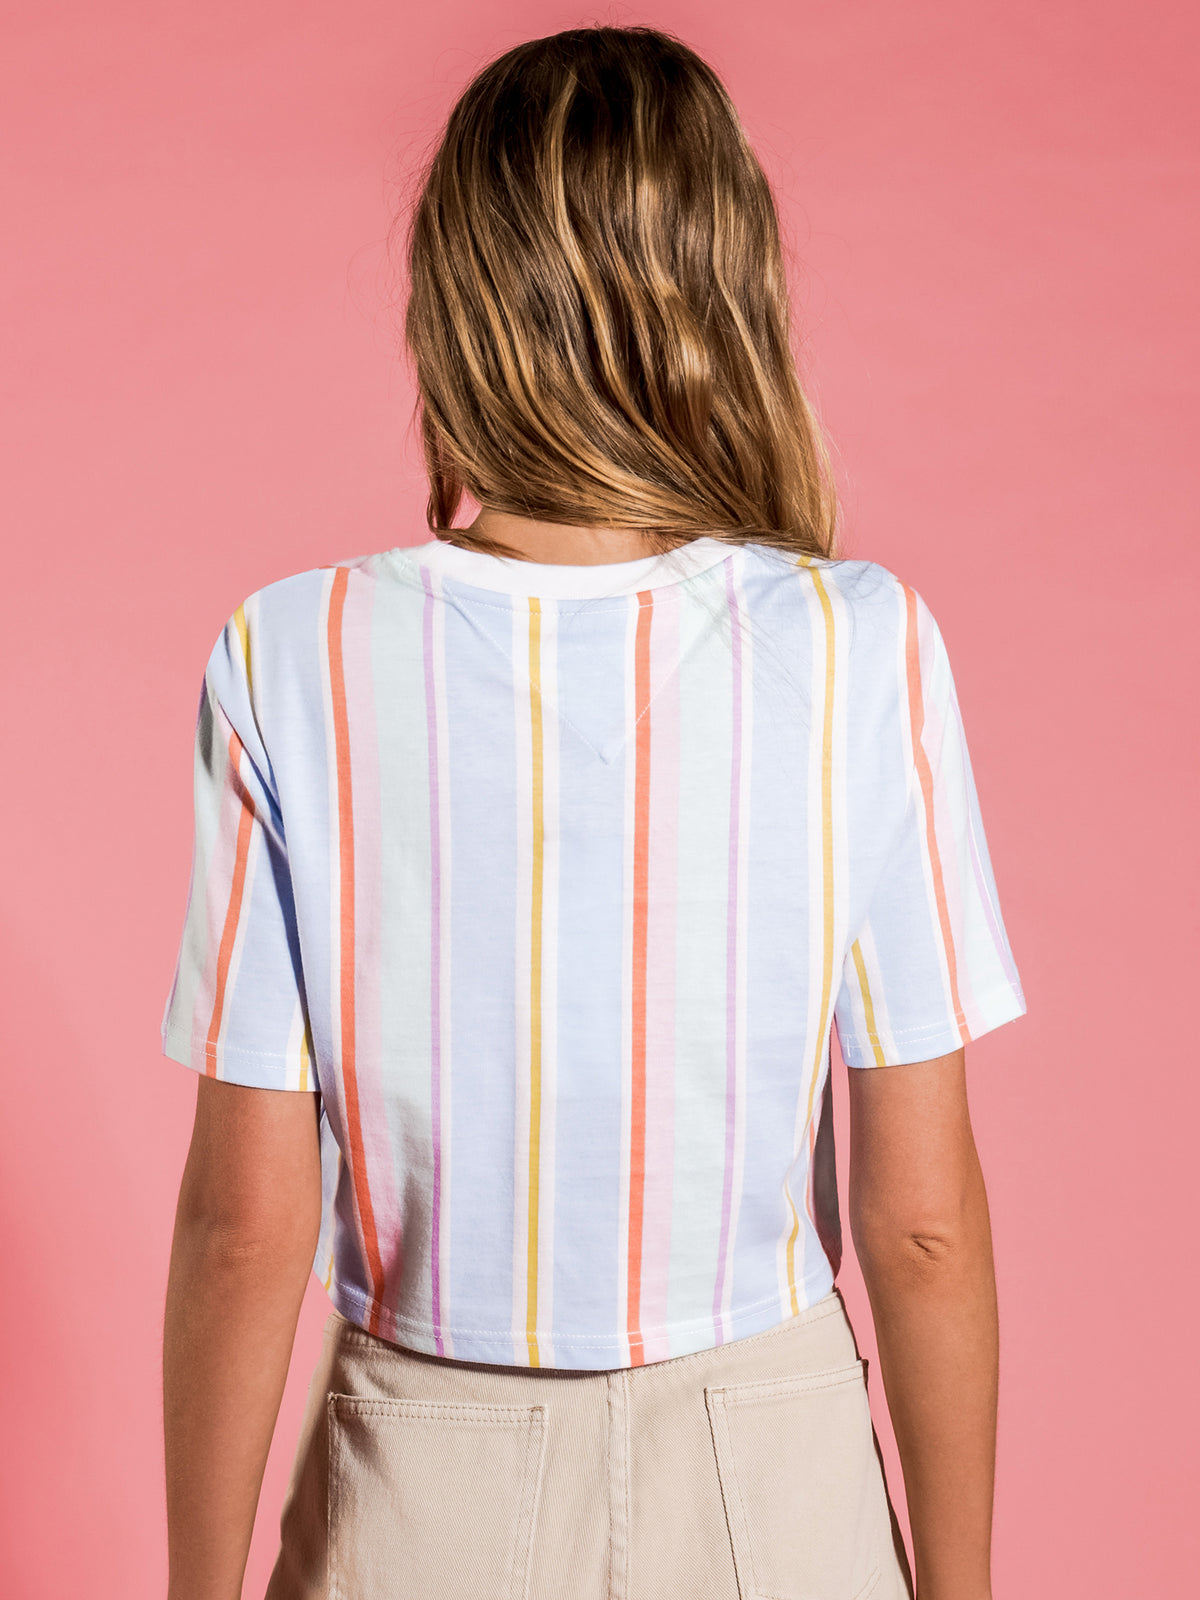 Stripe 1 Crop T-Shirt in Light Powdery Blue